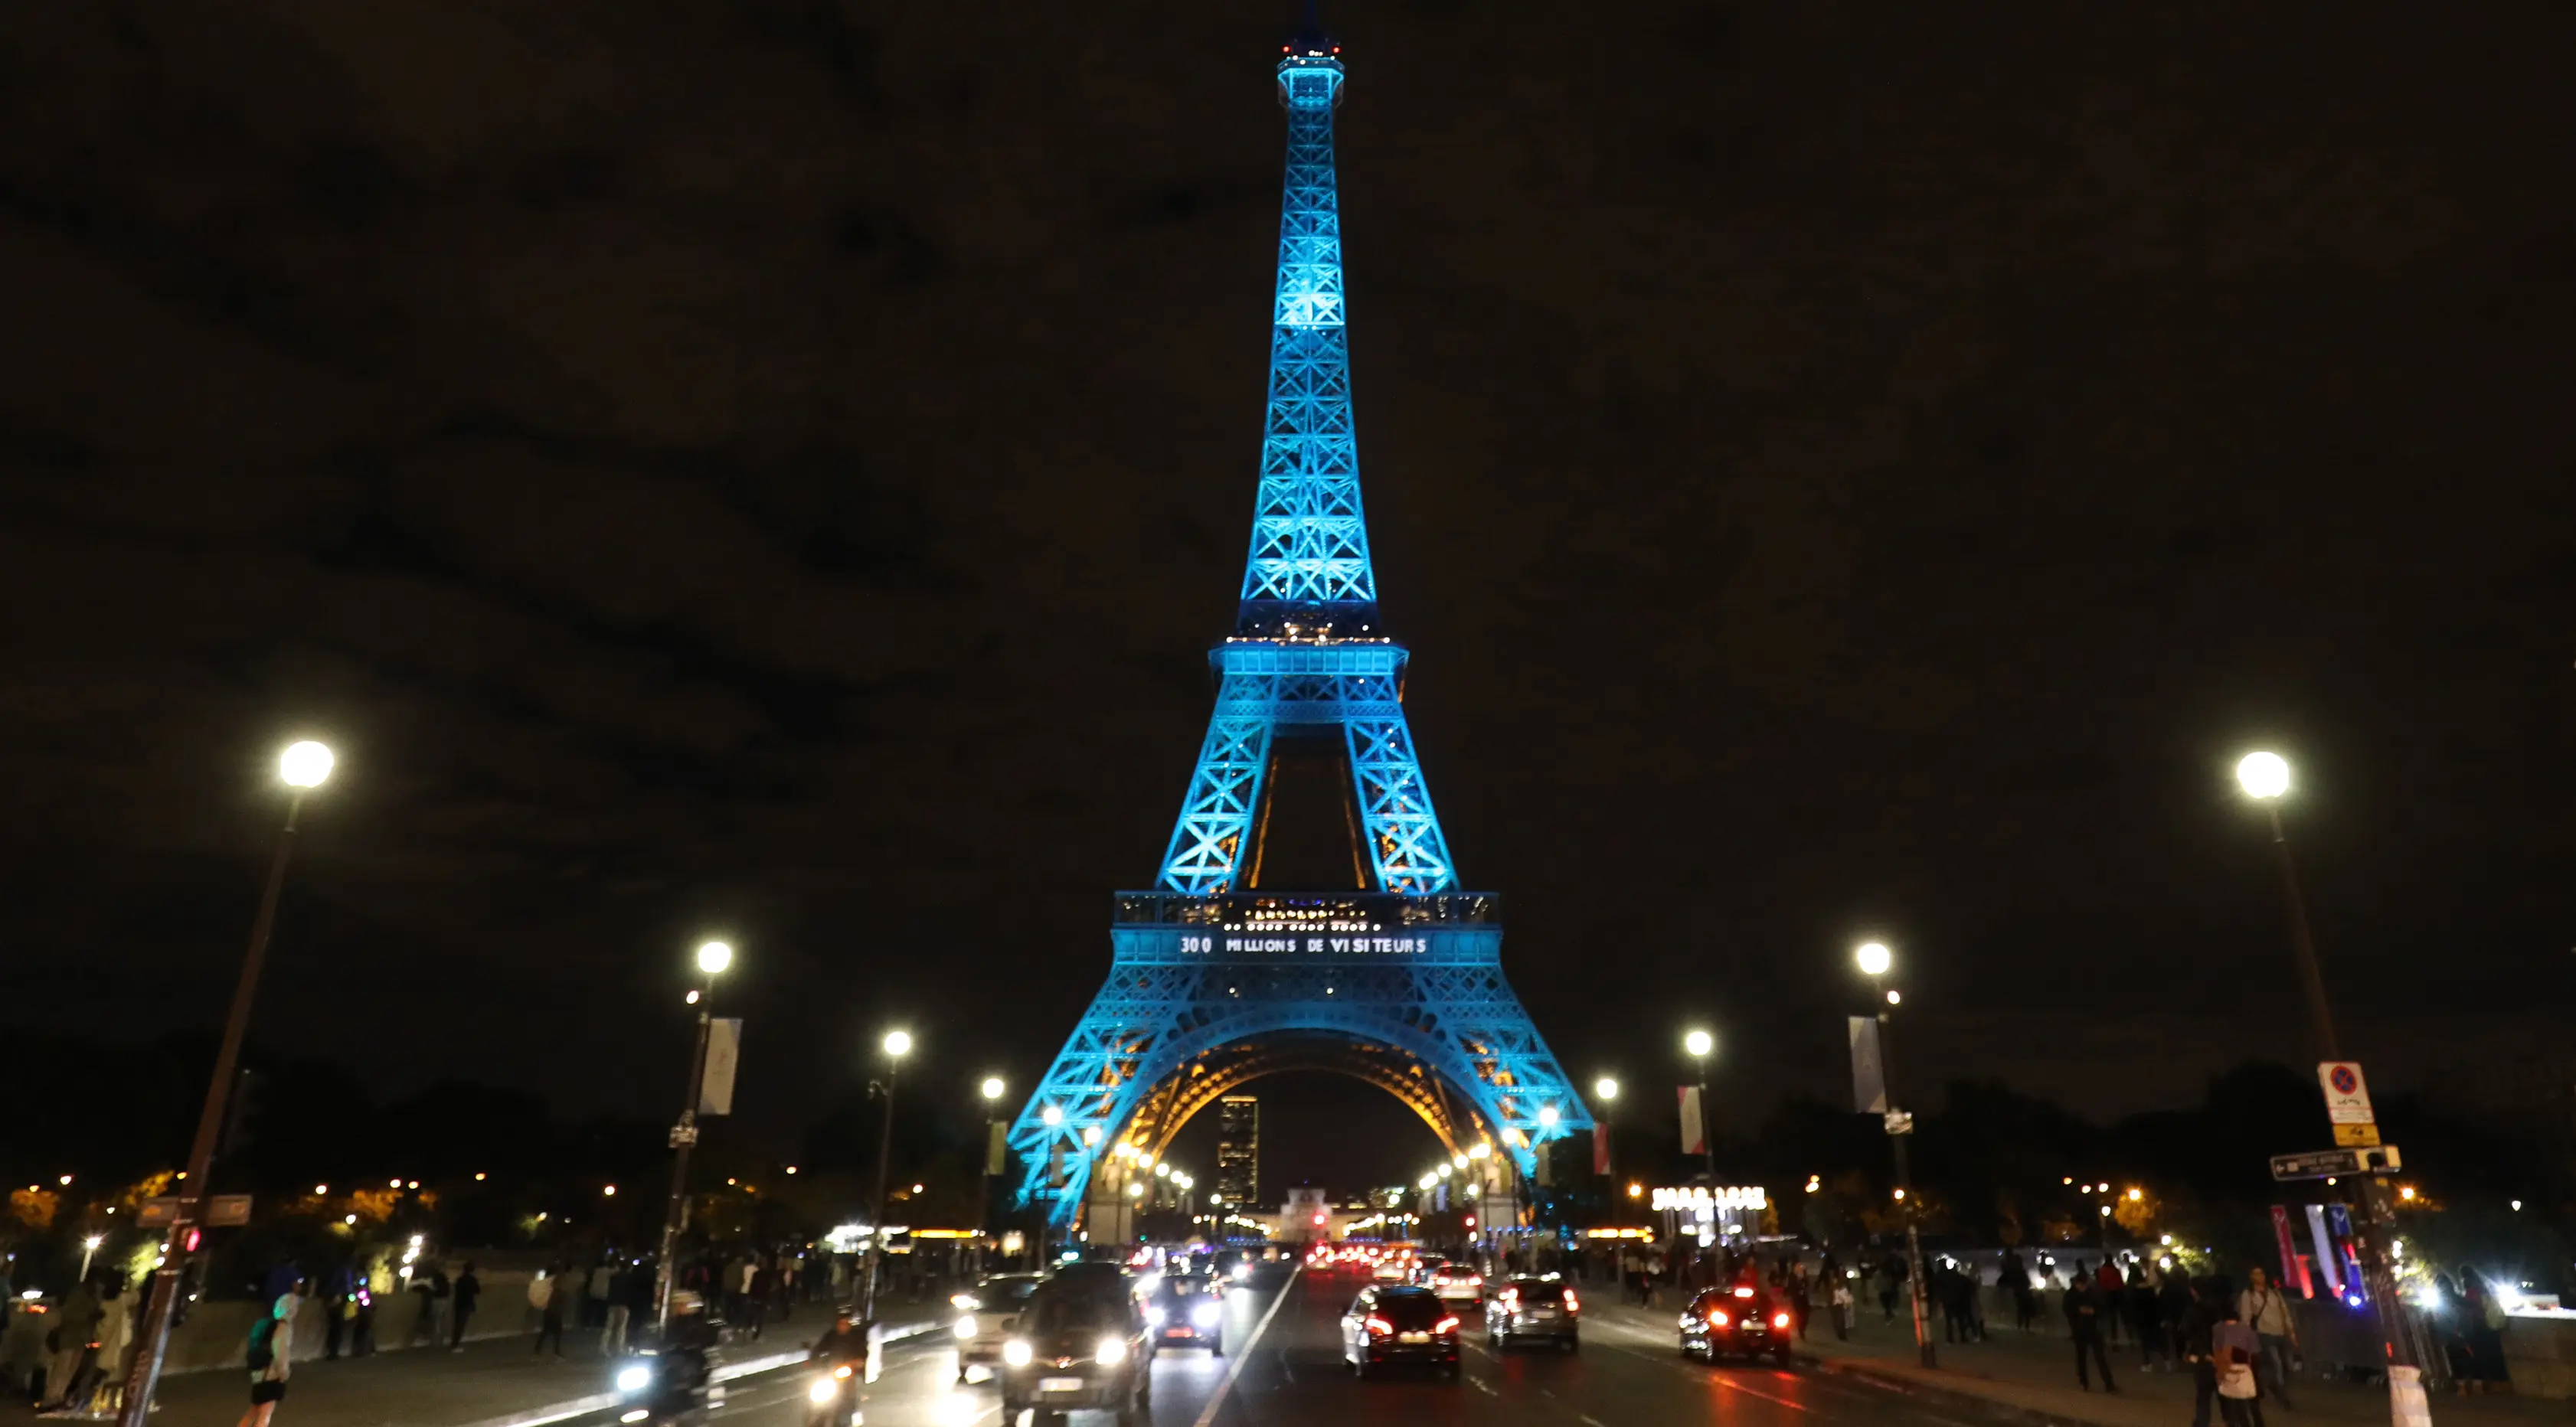 Pertunjukan cahaya spesial menerangi Menara Eiffel di kota Paris, Kamis (28/9). Hal tersebut berkaitan saat ikon negara Prancis yang mulai dibuka pada 1889 tersebut merayakan 300 juta pengunjung. (LUDOVIC MARIN/AFP)